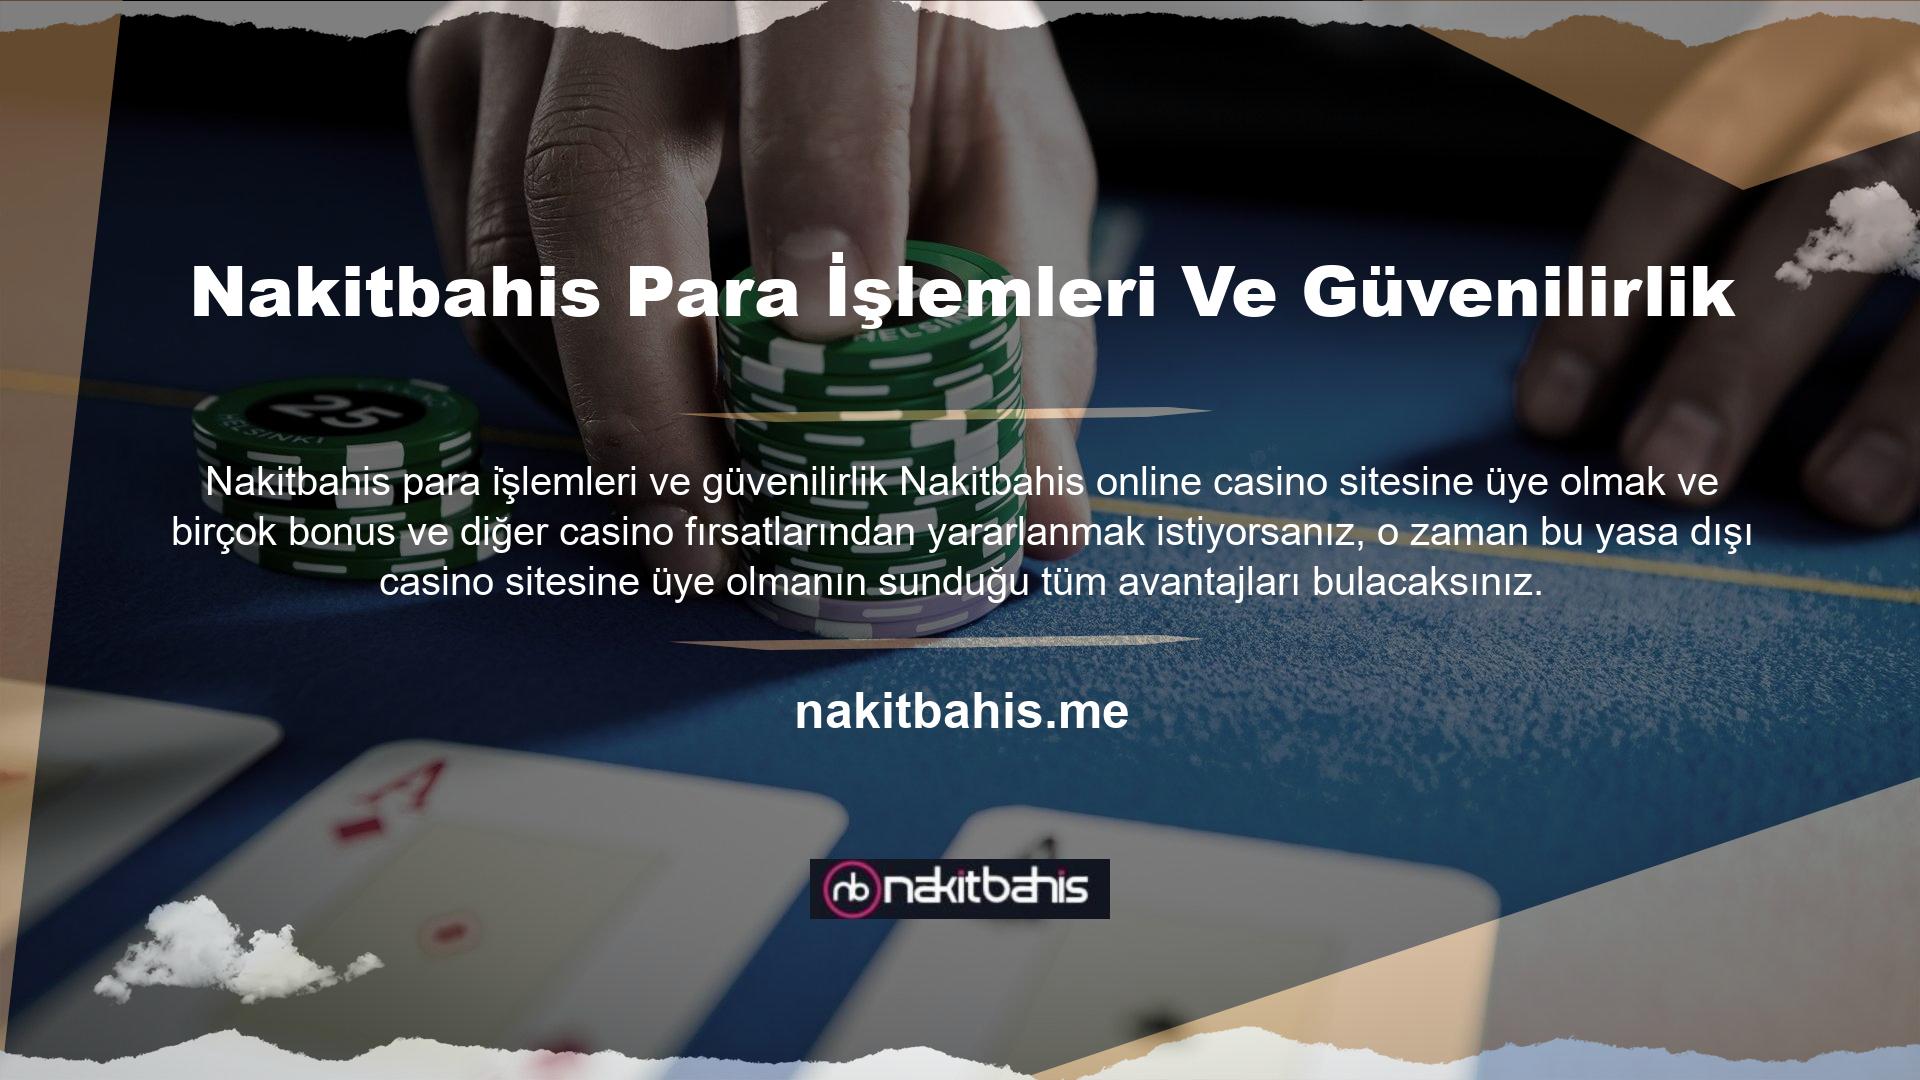 Dünyanın en önemli sitelerinden biri olan Nakitbahis, casino oyunları alanına birçok yenilik getirmiş ve önde gelen yasa dışı casino siteleri alanına büyük değer katmıştır